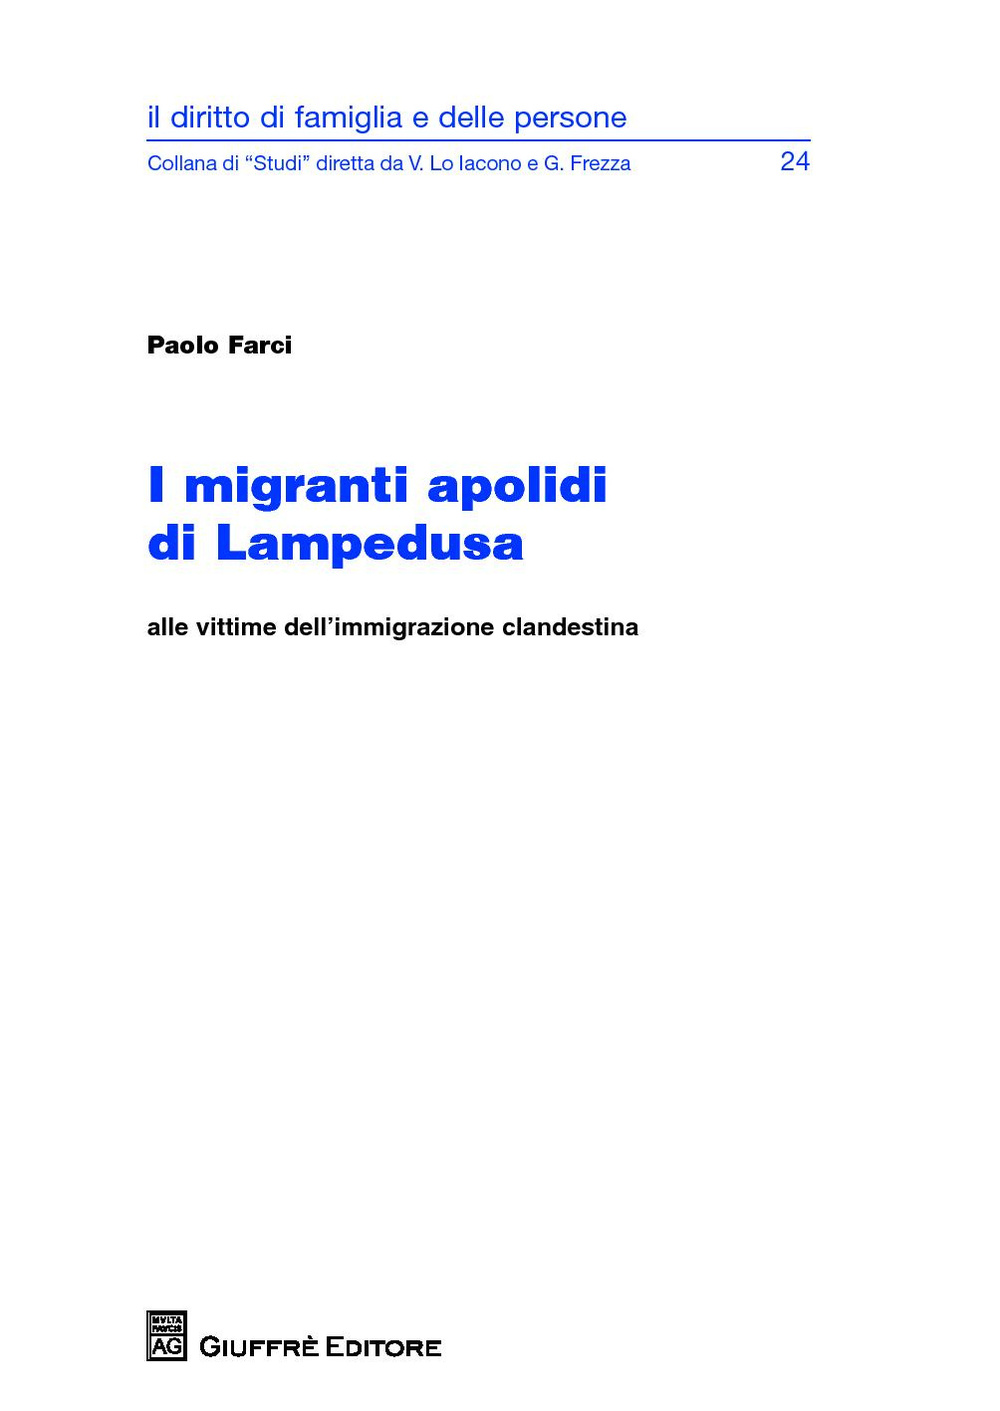 I migranti apolidi di Lampedusa